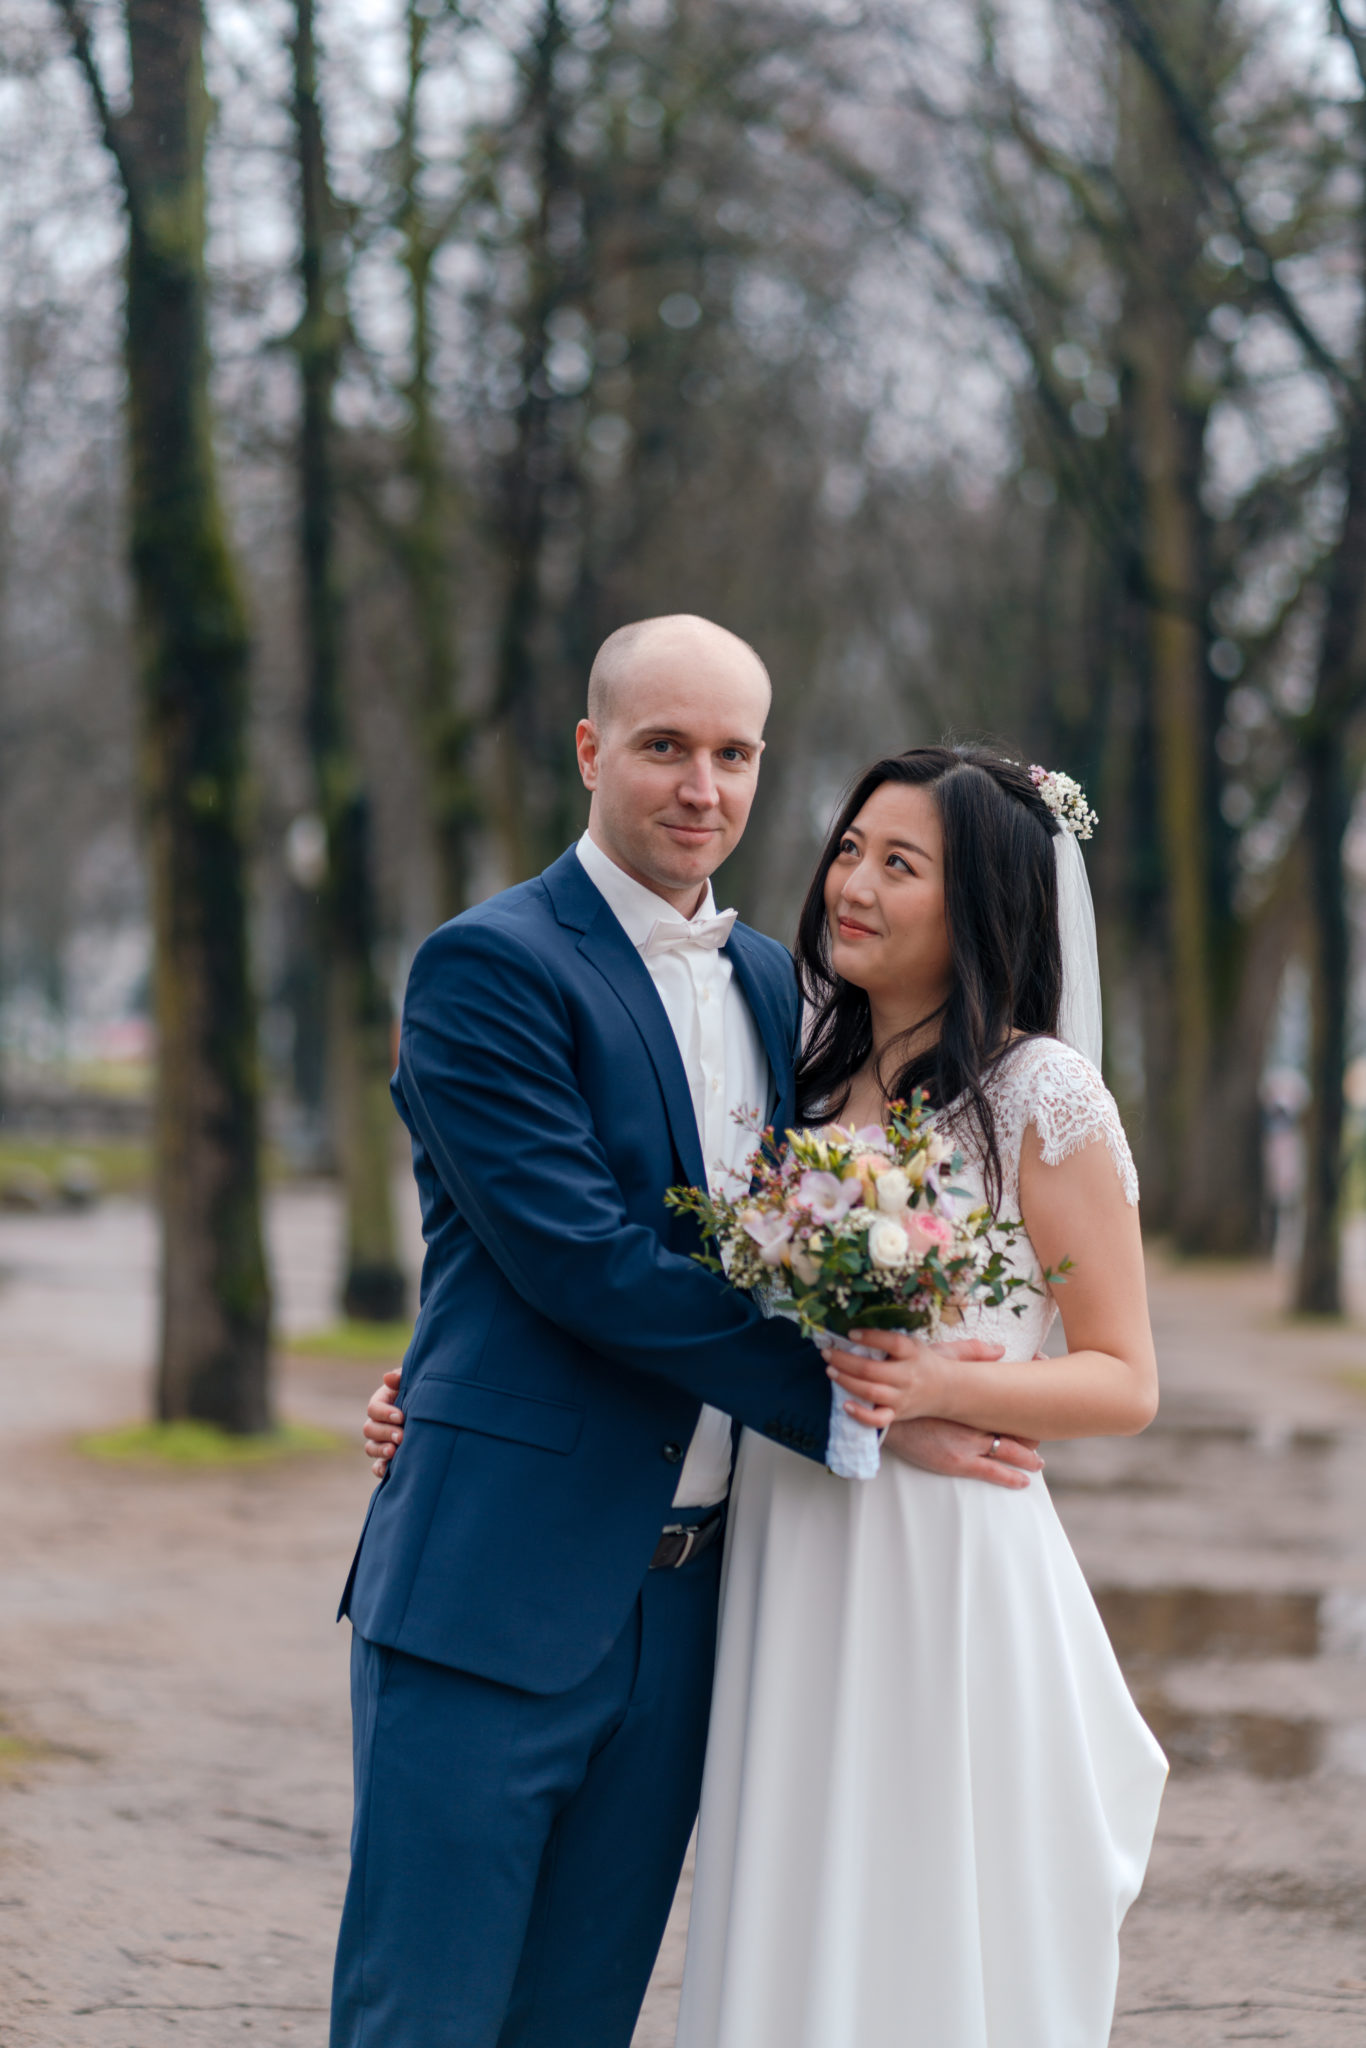 Tolle Hochzeitsfotos trotz Regen in Bonn - Yihan & Alex